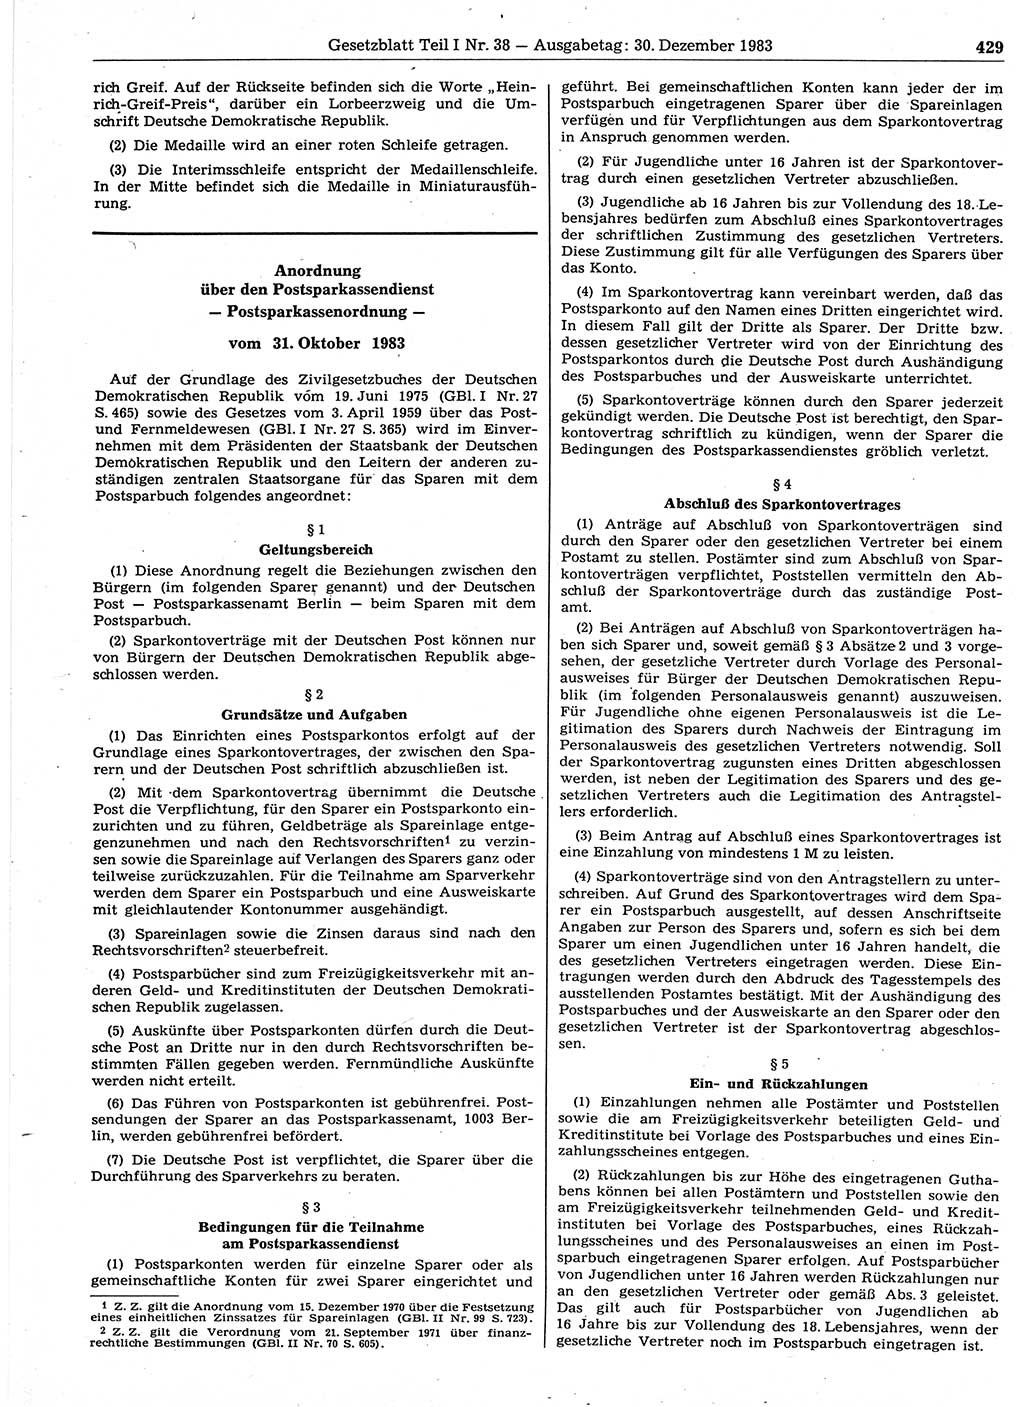 Gesetzblatt (GBl.) der Deutschen Demokratischen Republik (DDR) Teil Ⅰ 1983, Seite 429 (GBl. DDR Ⅰ 1983, S. 429)